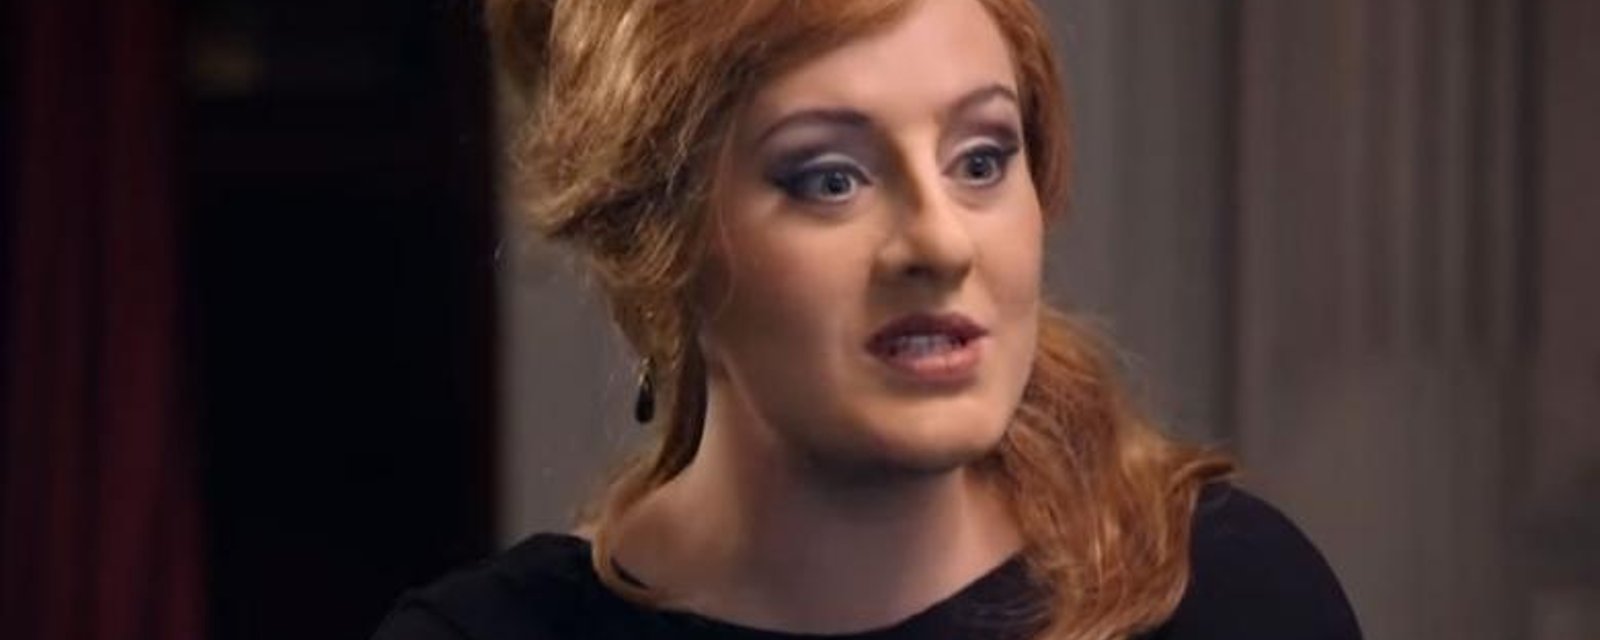 Adele s'inscrit à un cours d'imitation d'Adele et provoque toute une commotion!